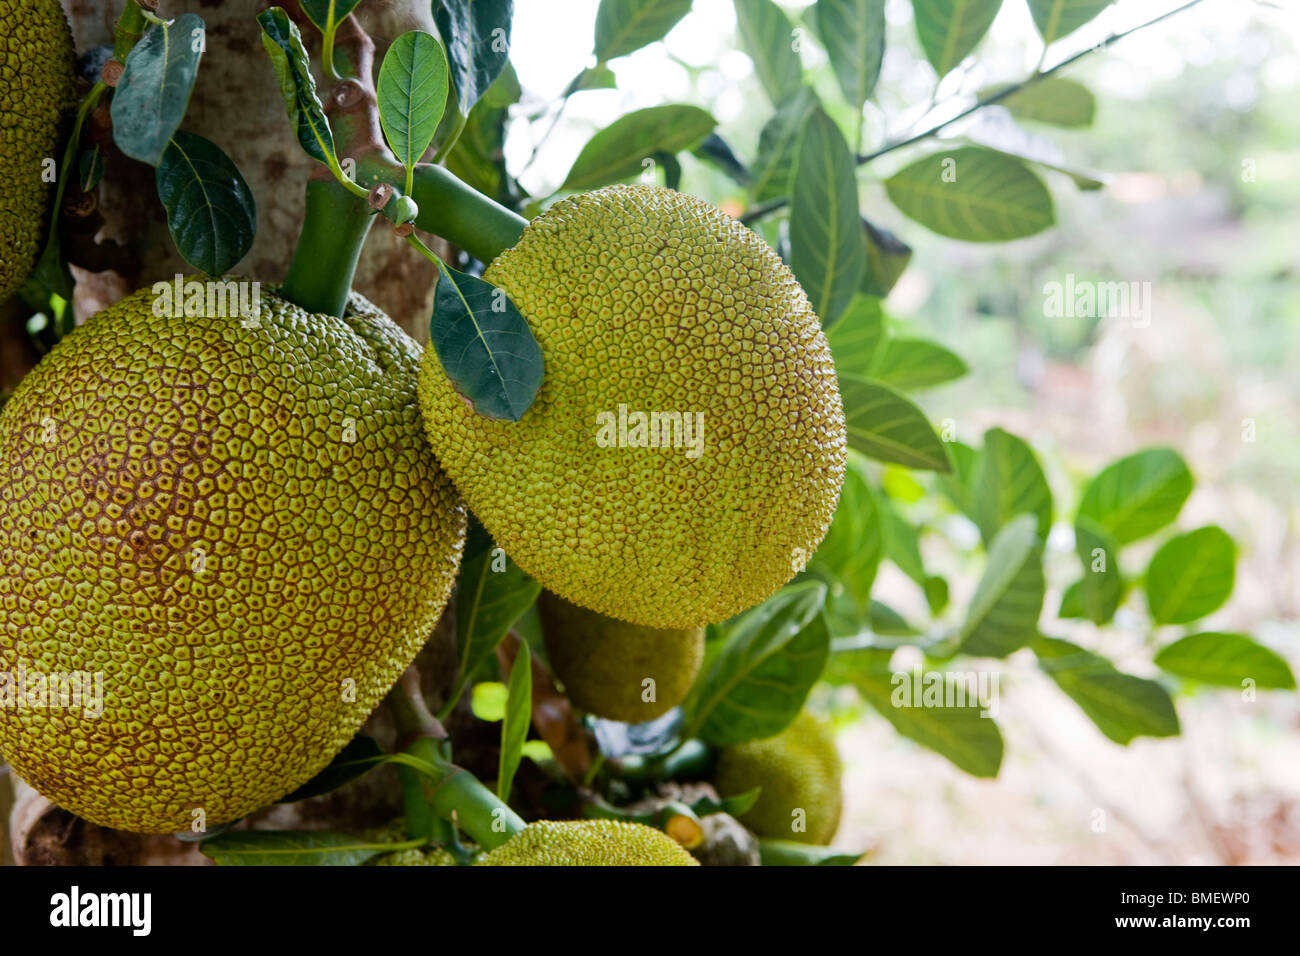 Close-up of Jackfruit, China Stock Photo